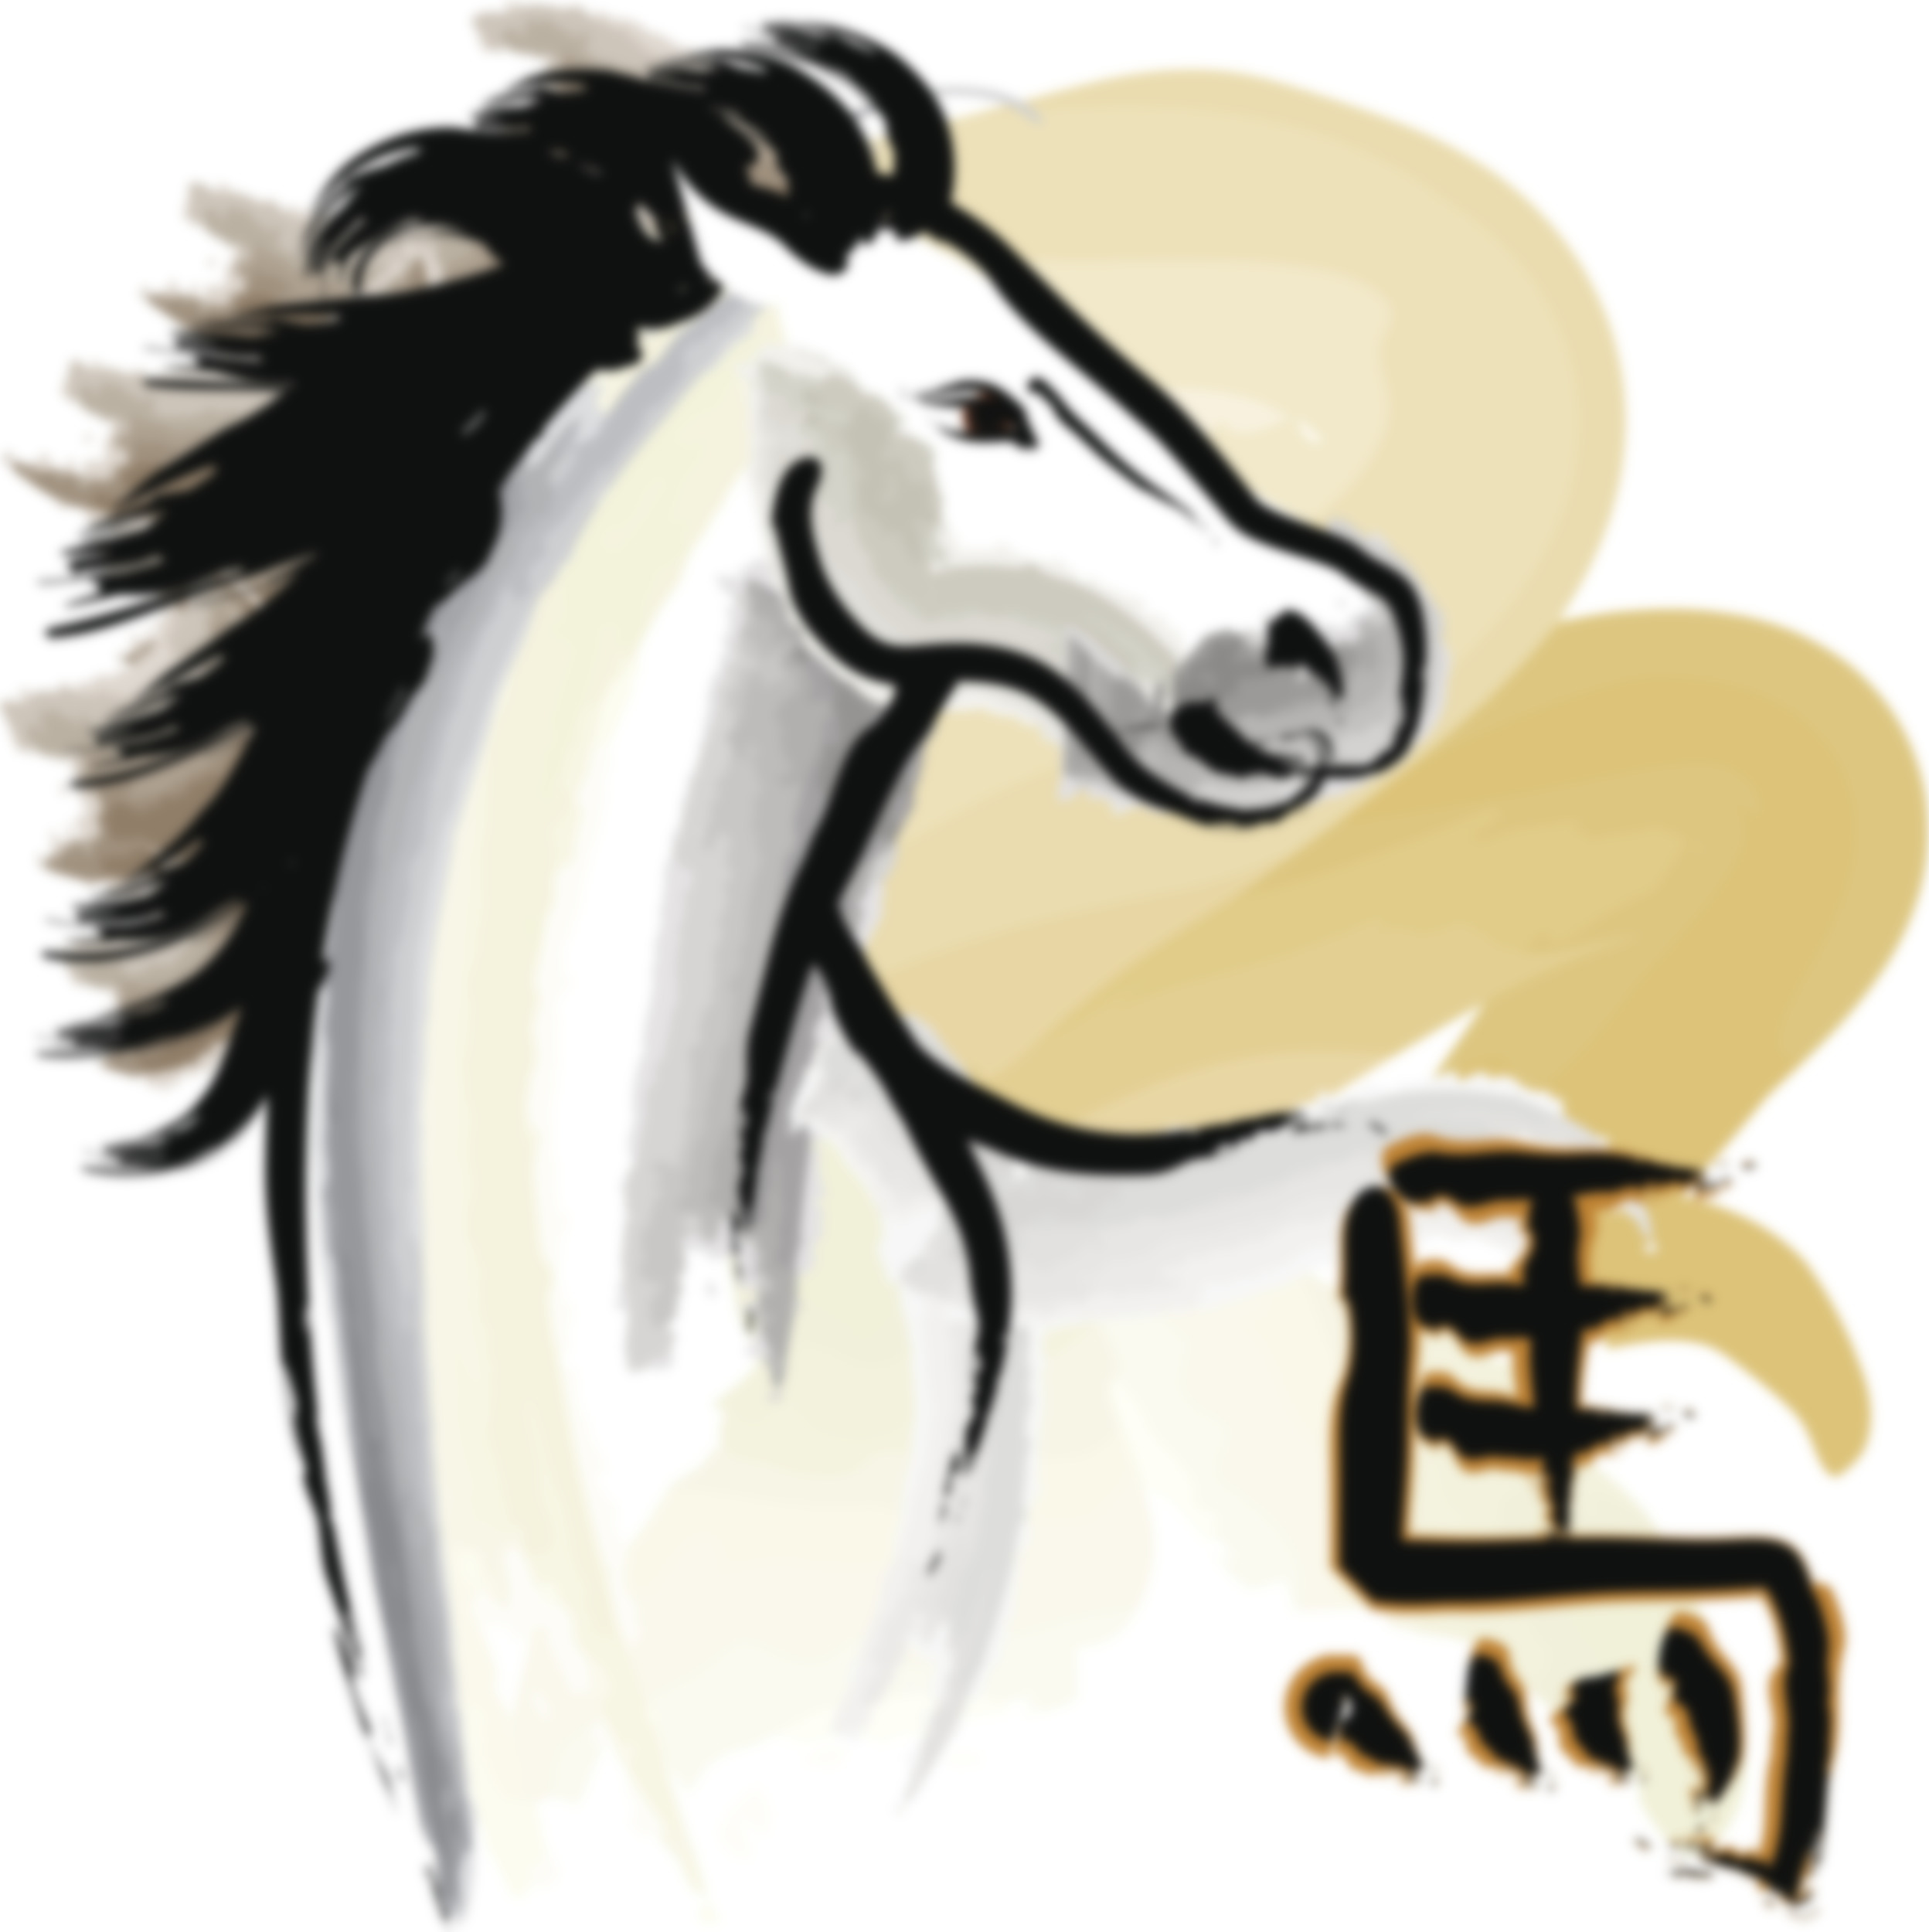 24 год год лошади. Лошадь знак зодиака. Лошадь знак года. Китайский знак лошади. Символ года лошадь.